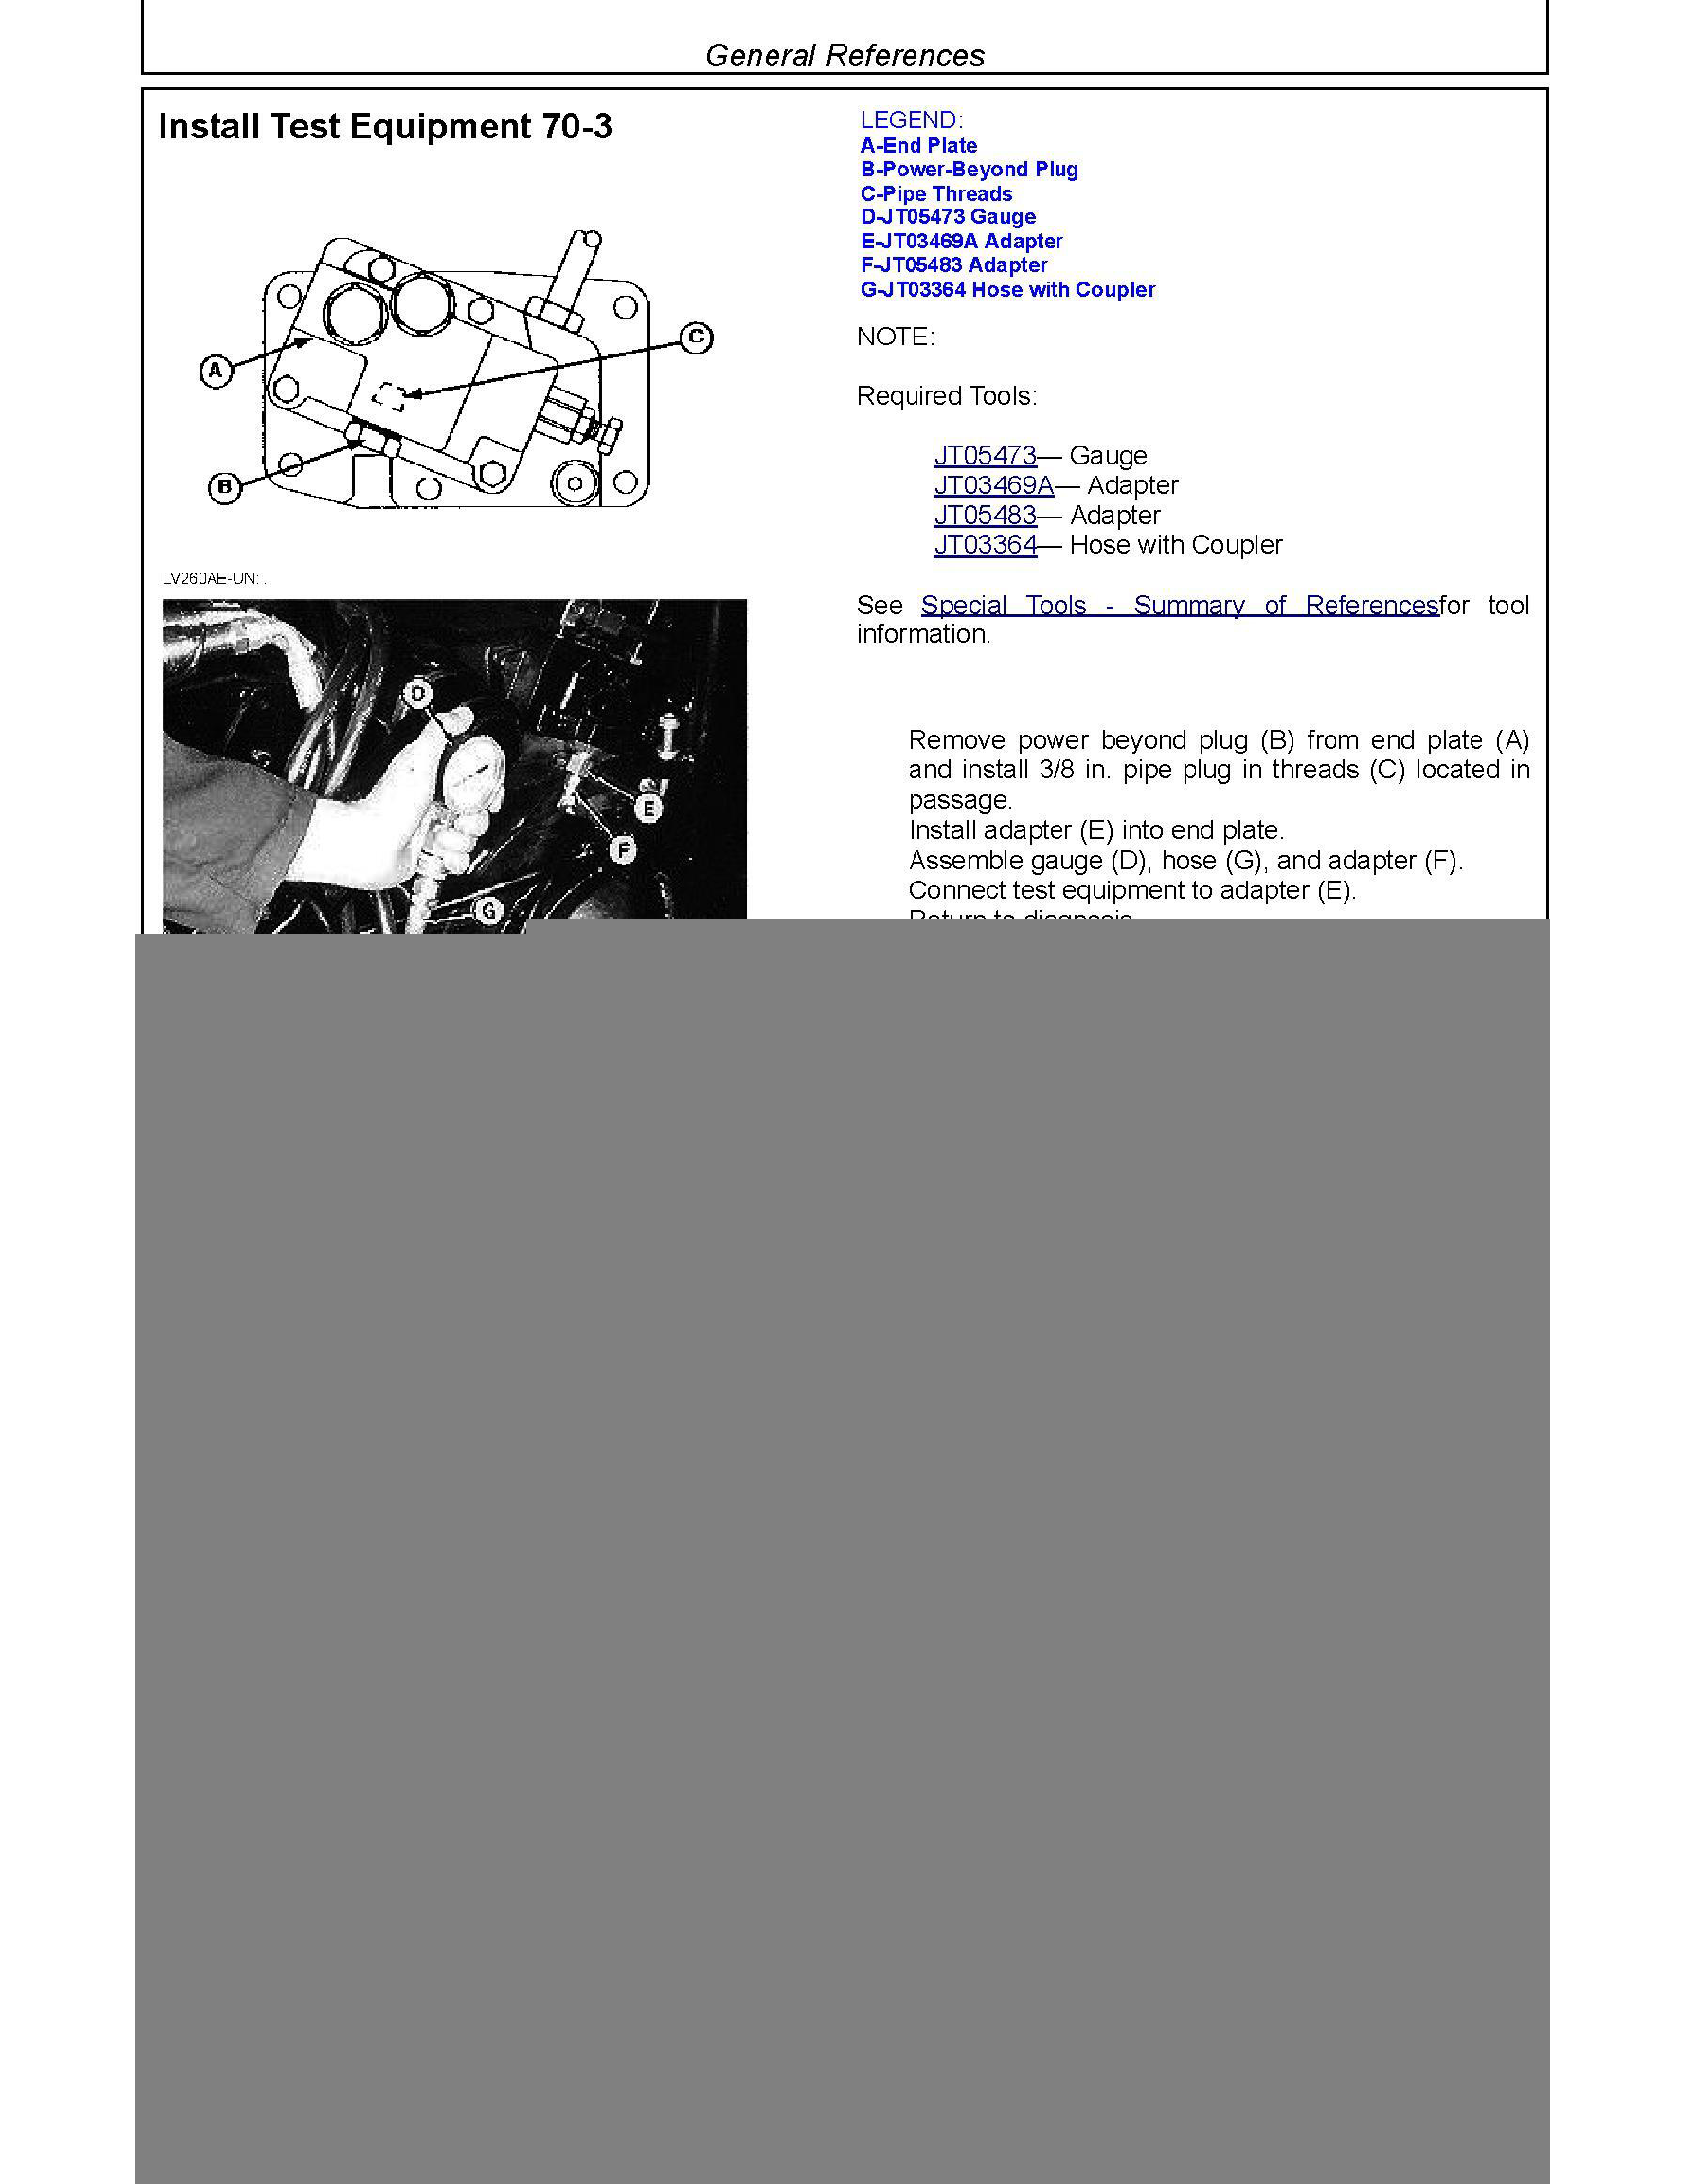 John Deere 7530 manual pdf